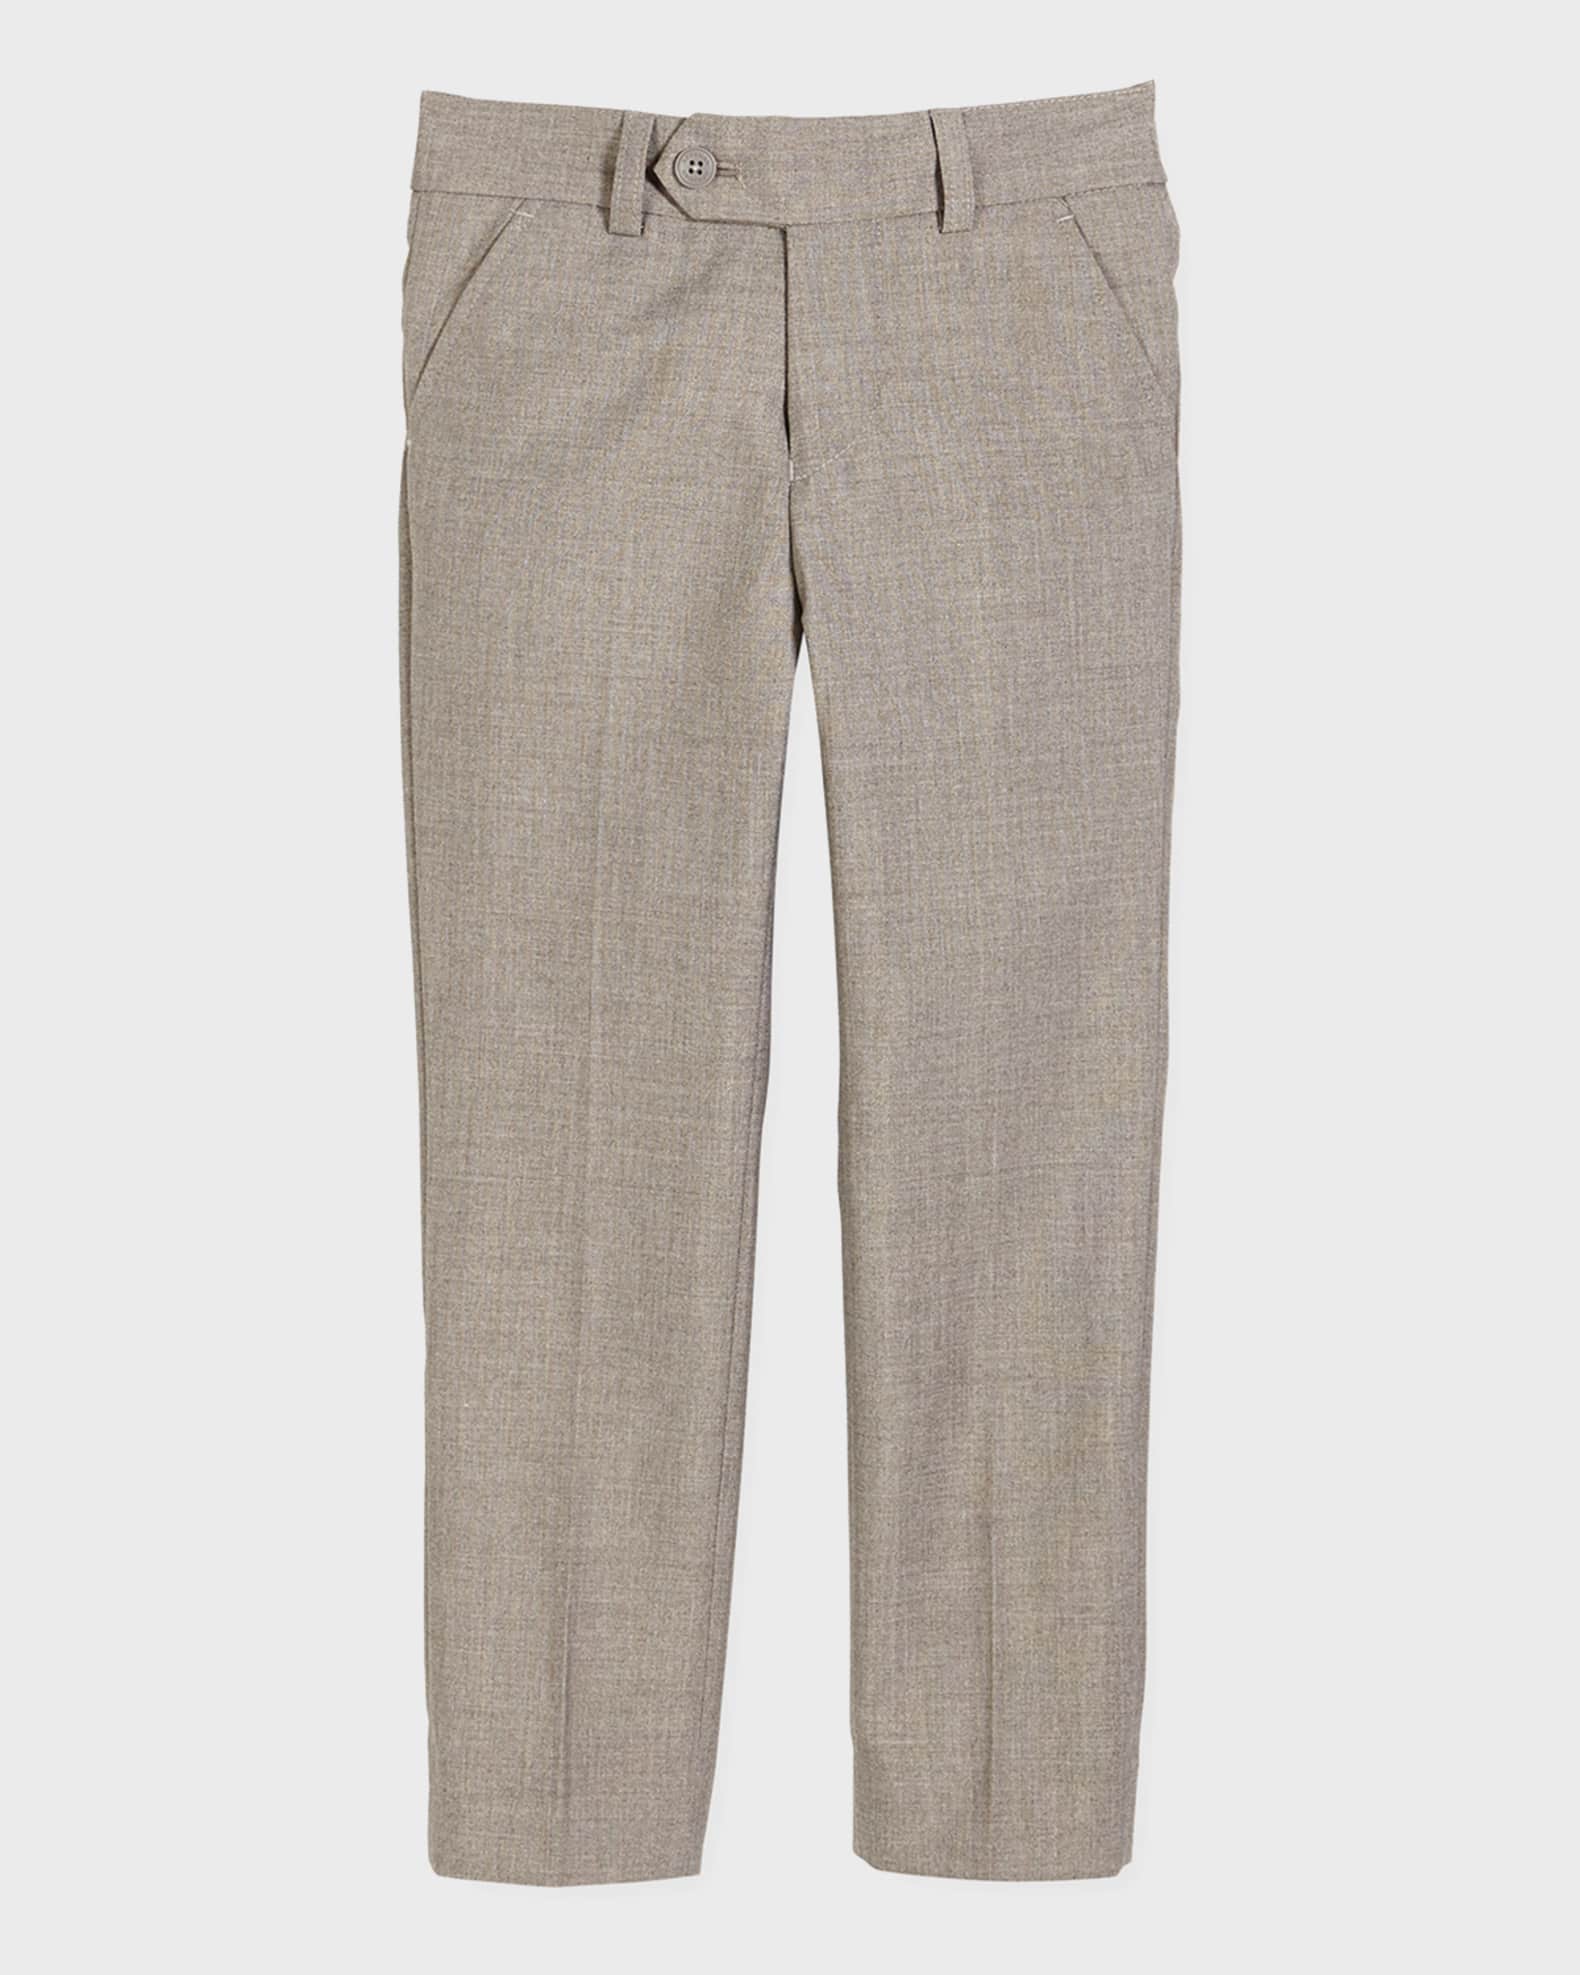 Slim Suit Pants, Light Gray, Size 2-14 0